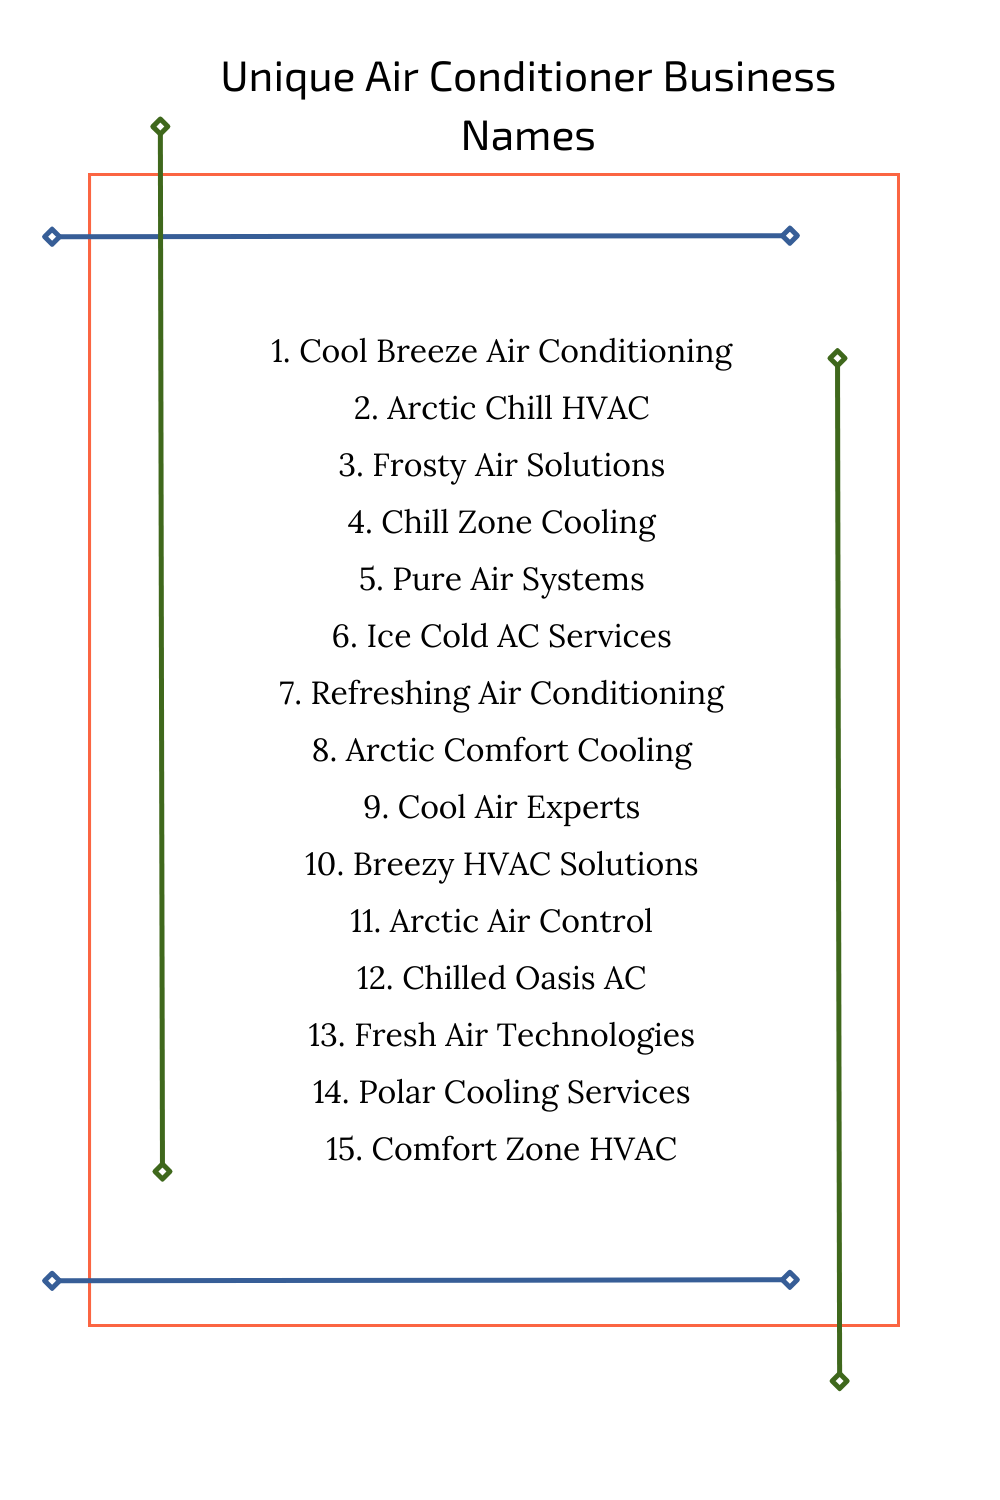 Unique Air Conditioner Business Names